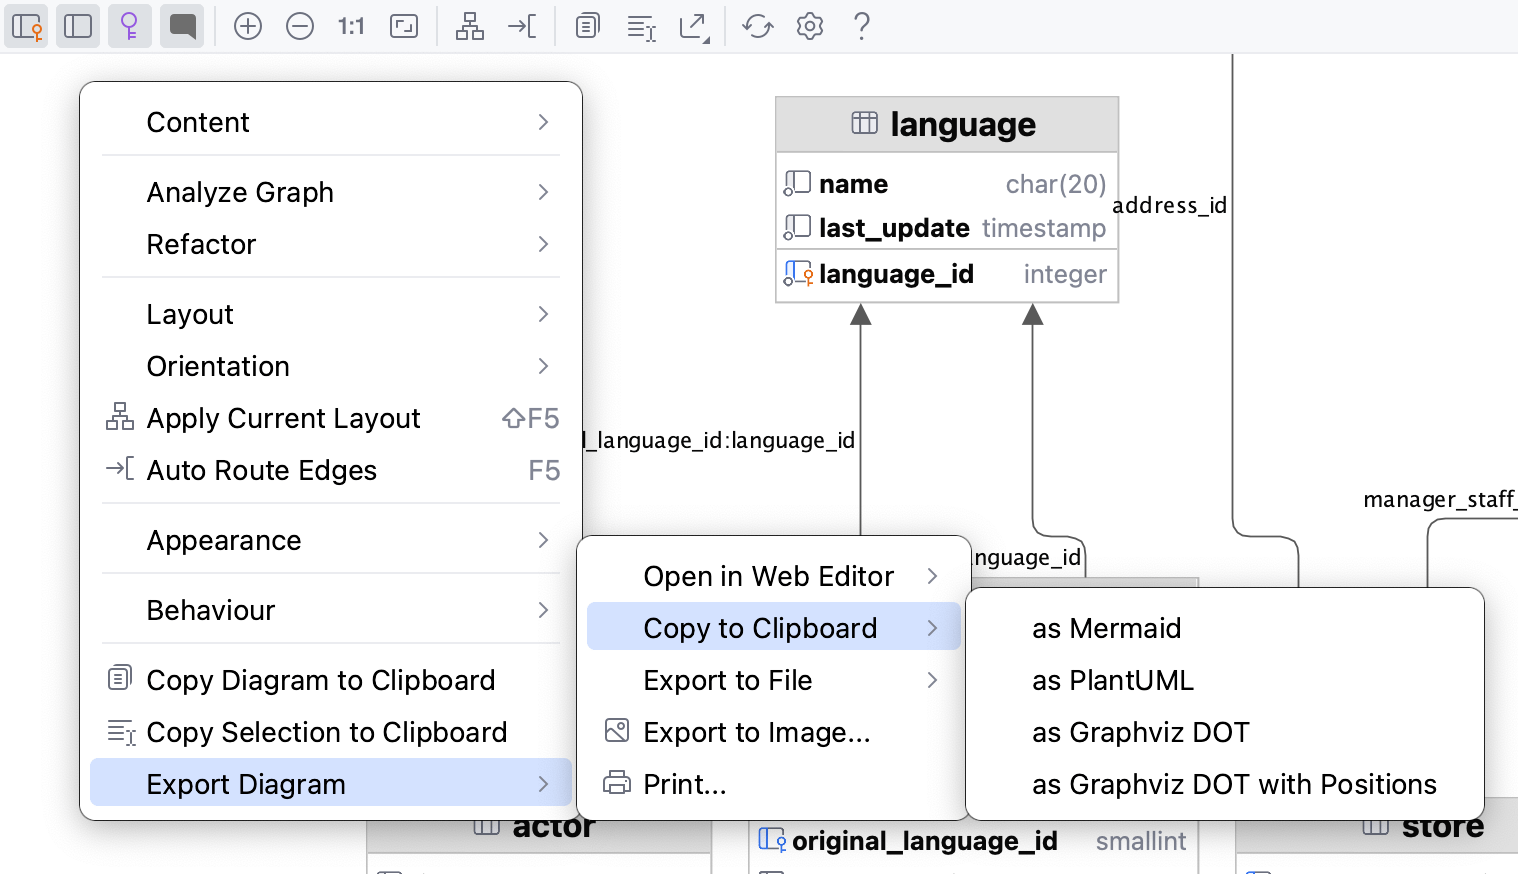 Copy diagrams to clipboard via context menu